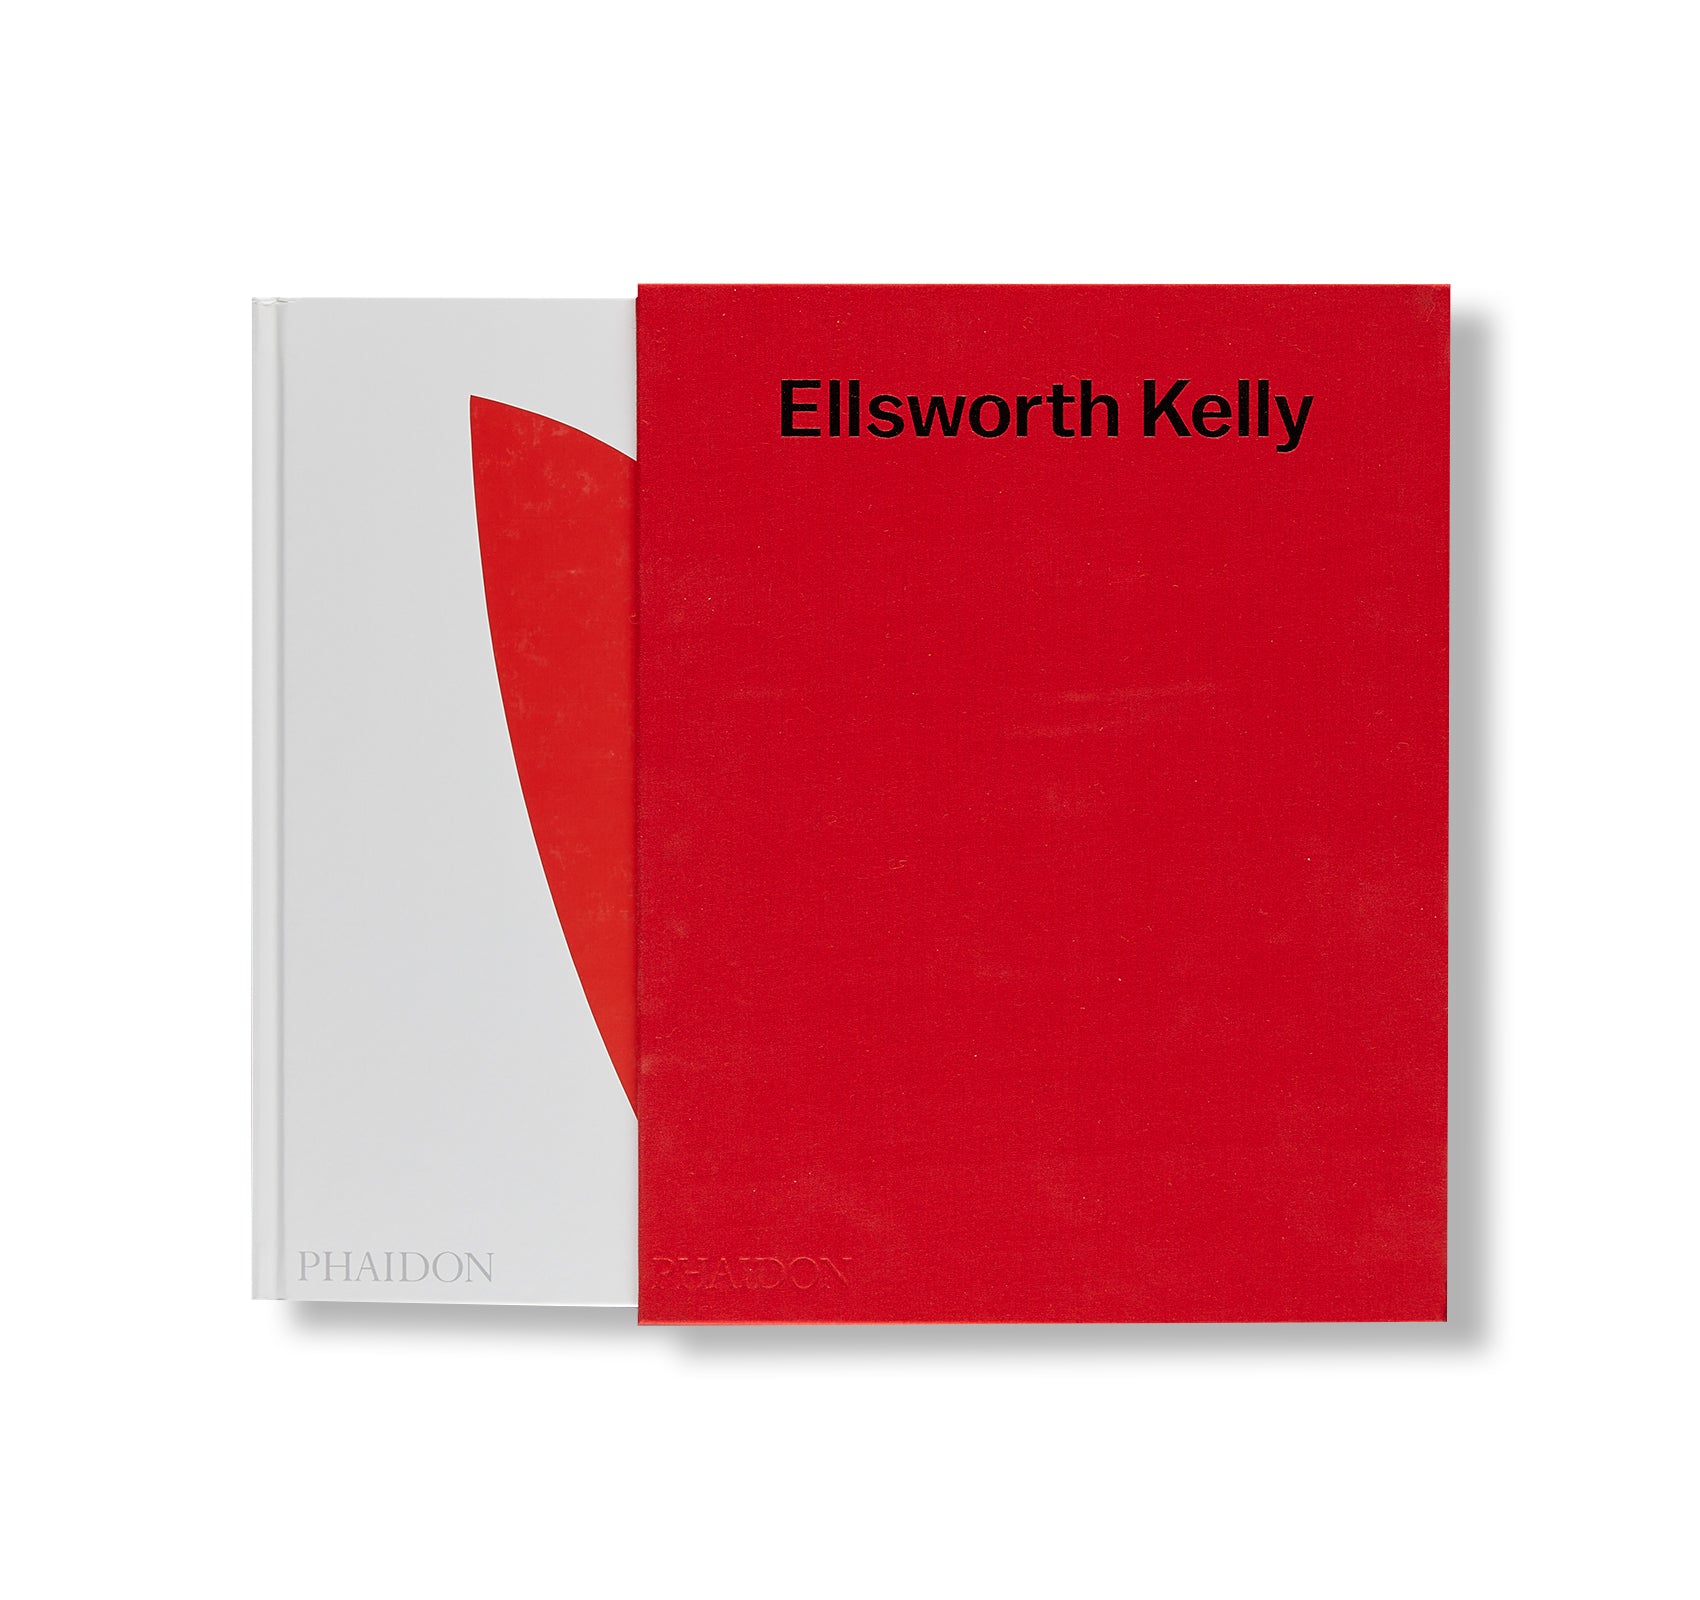 ELLSWORTH KELLY (2015) by Ellsworth Kelly